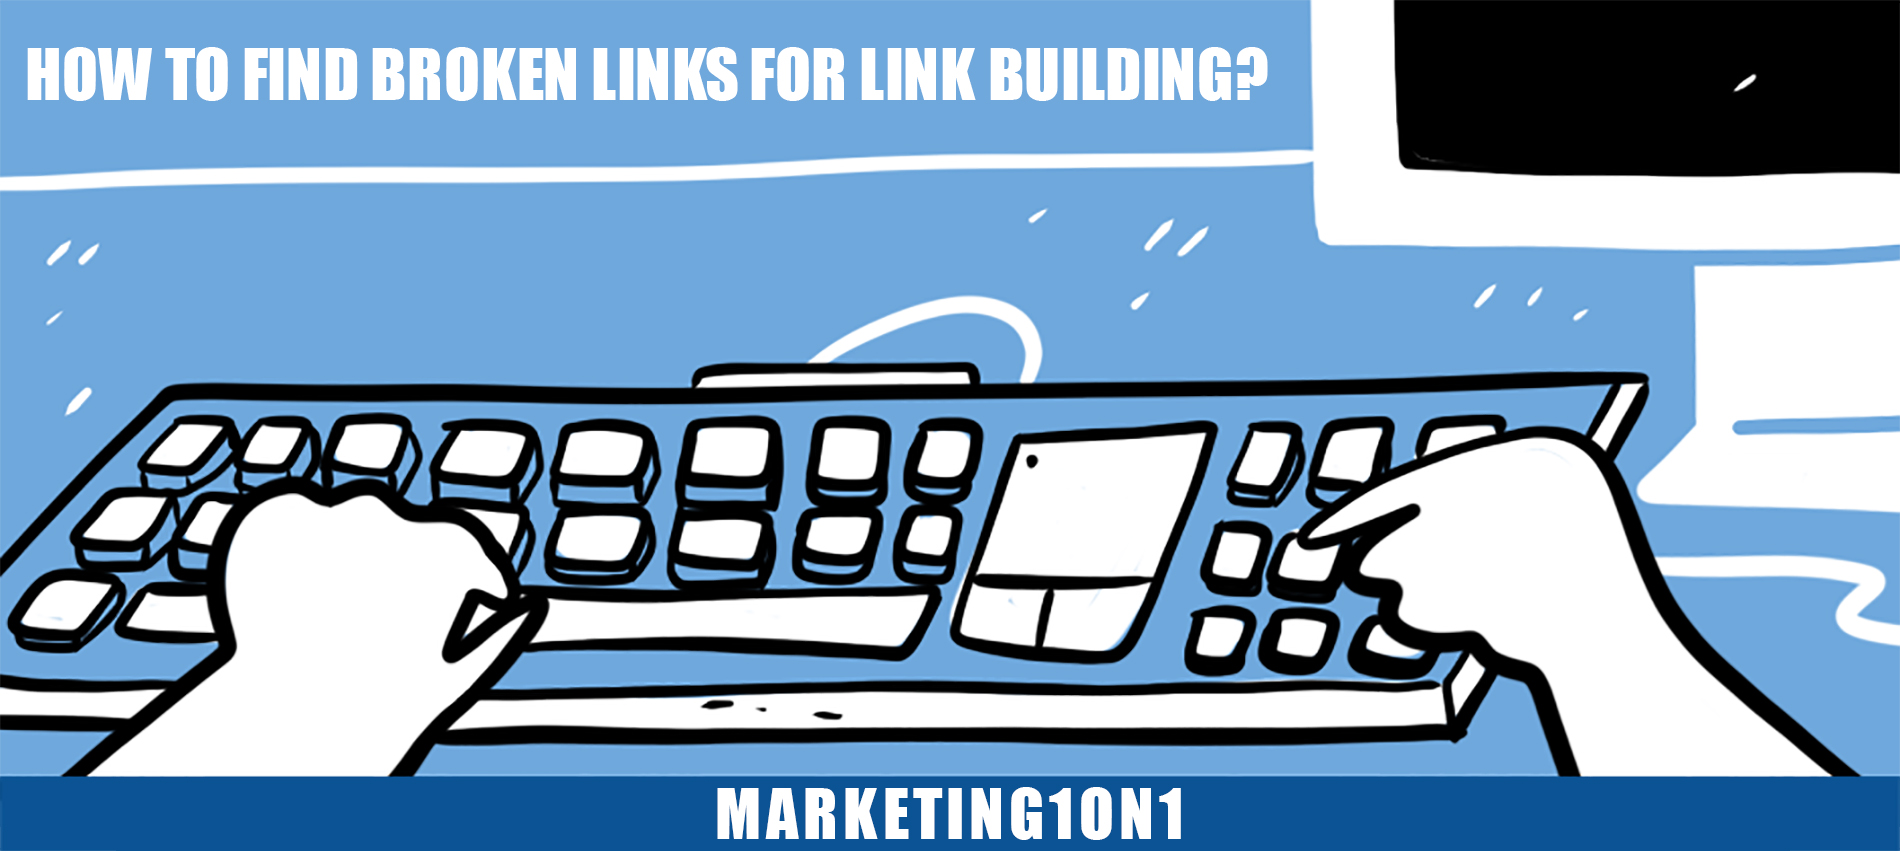 How to find broken links for link building?